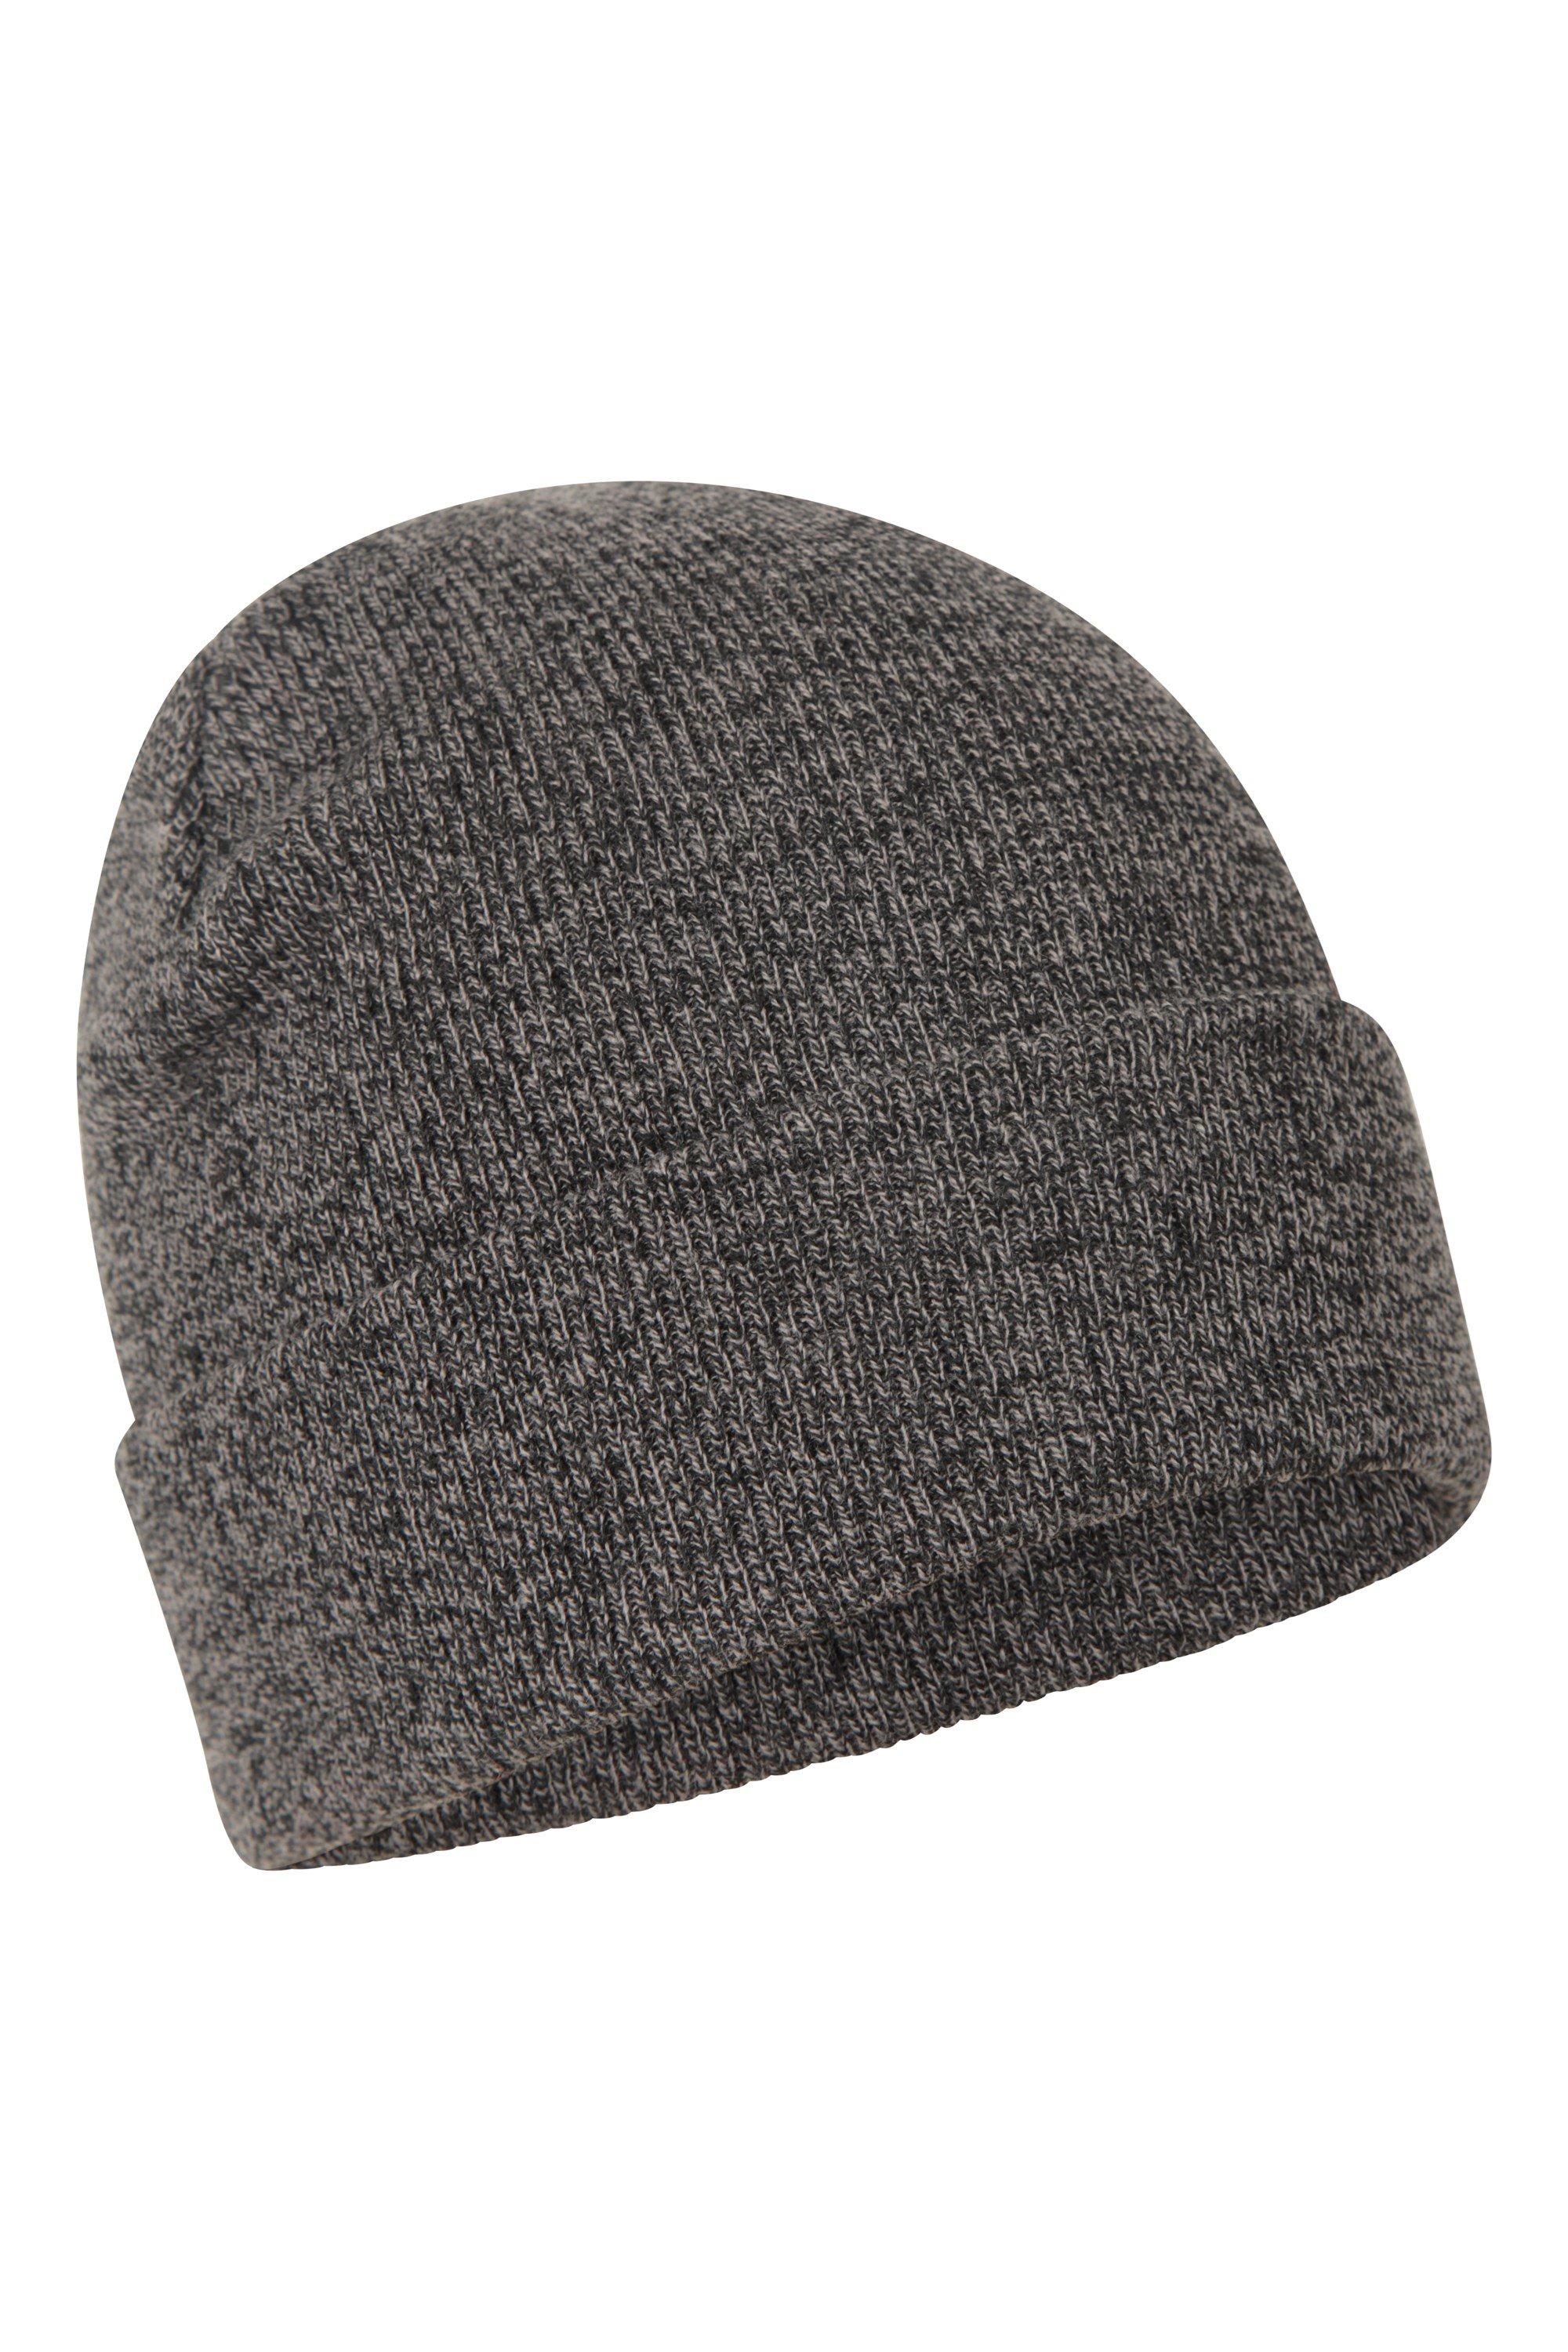 Шапка-бини «Компас» Толстая вязаная теплая легкая зимняя шапка Mountain Warehouse, черный цена и фото